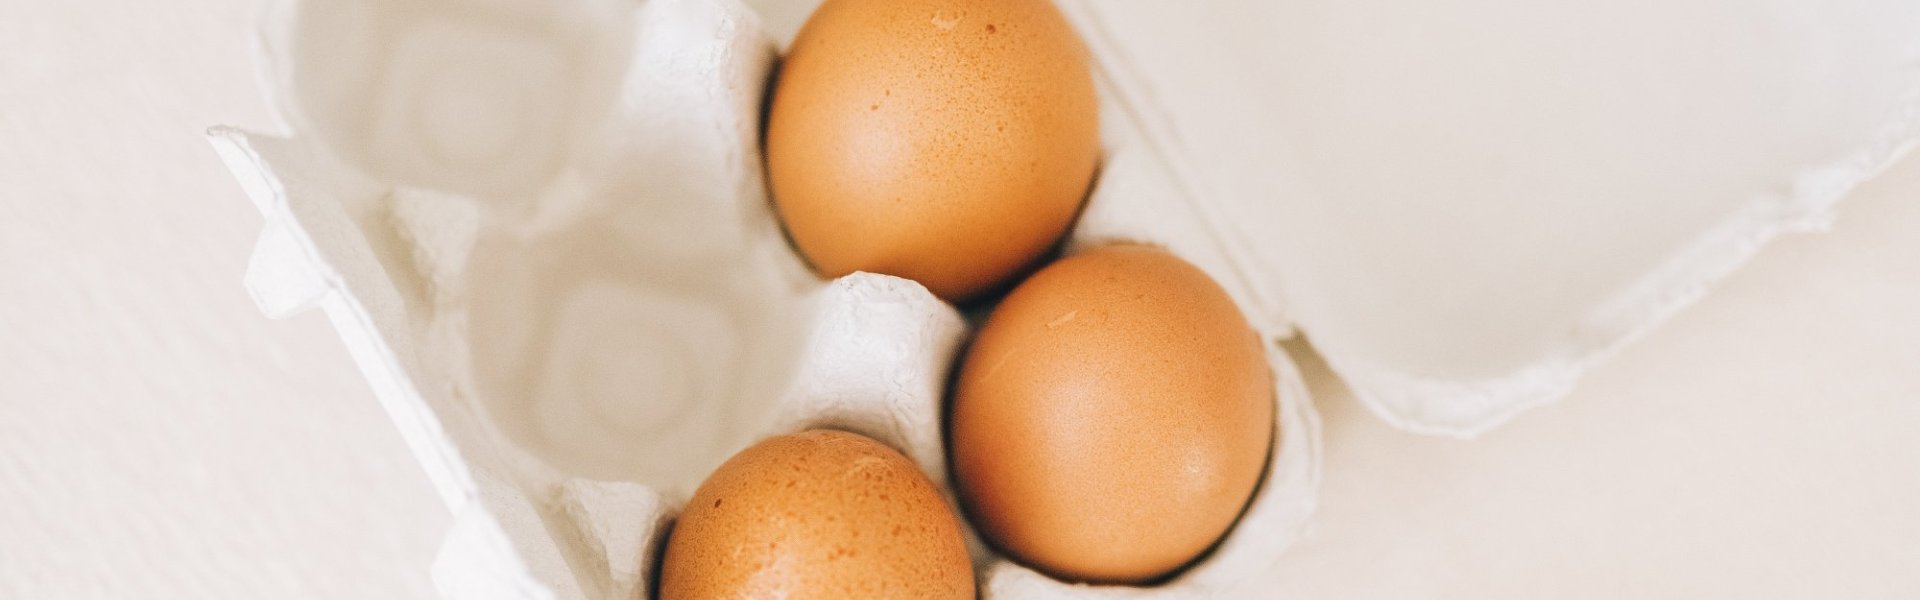 Caius Opsommen Vrijwel Eieren kopen: waar moet ik op letten? | Lekker van bij ons